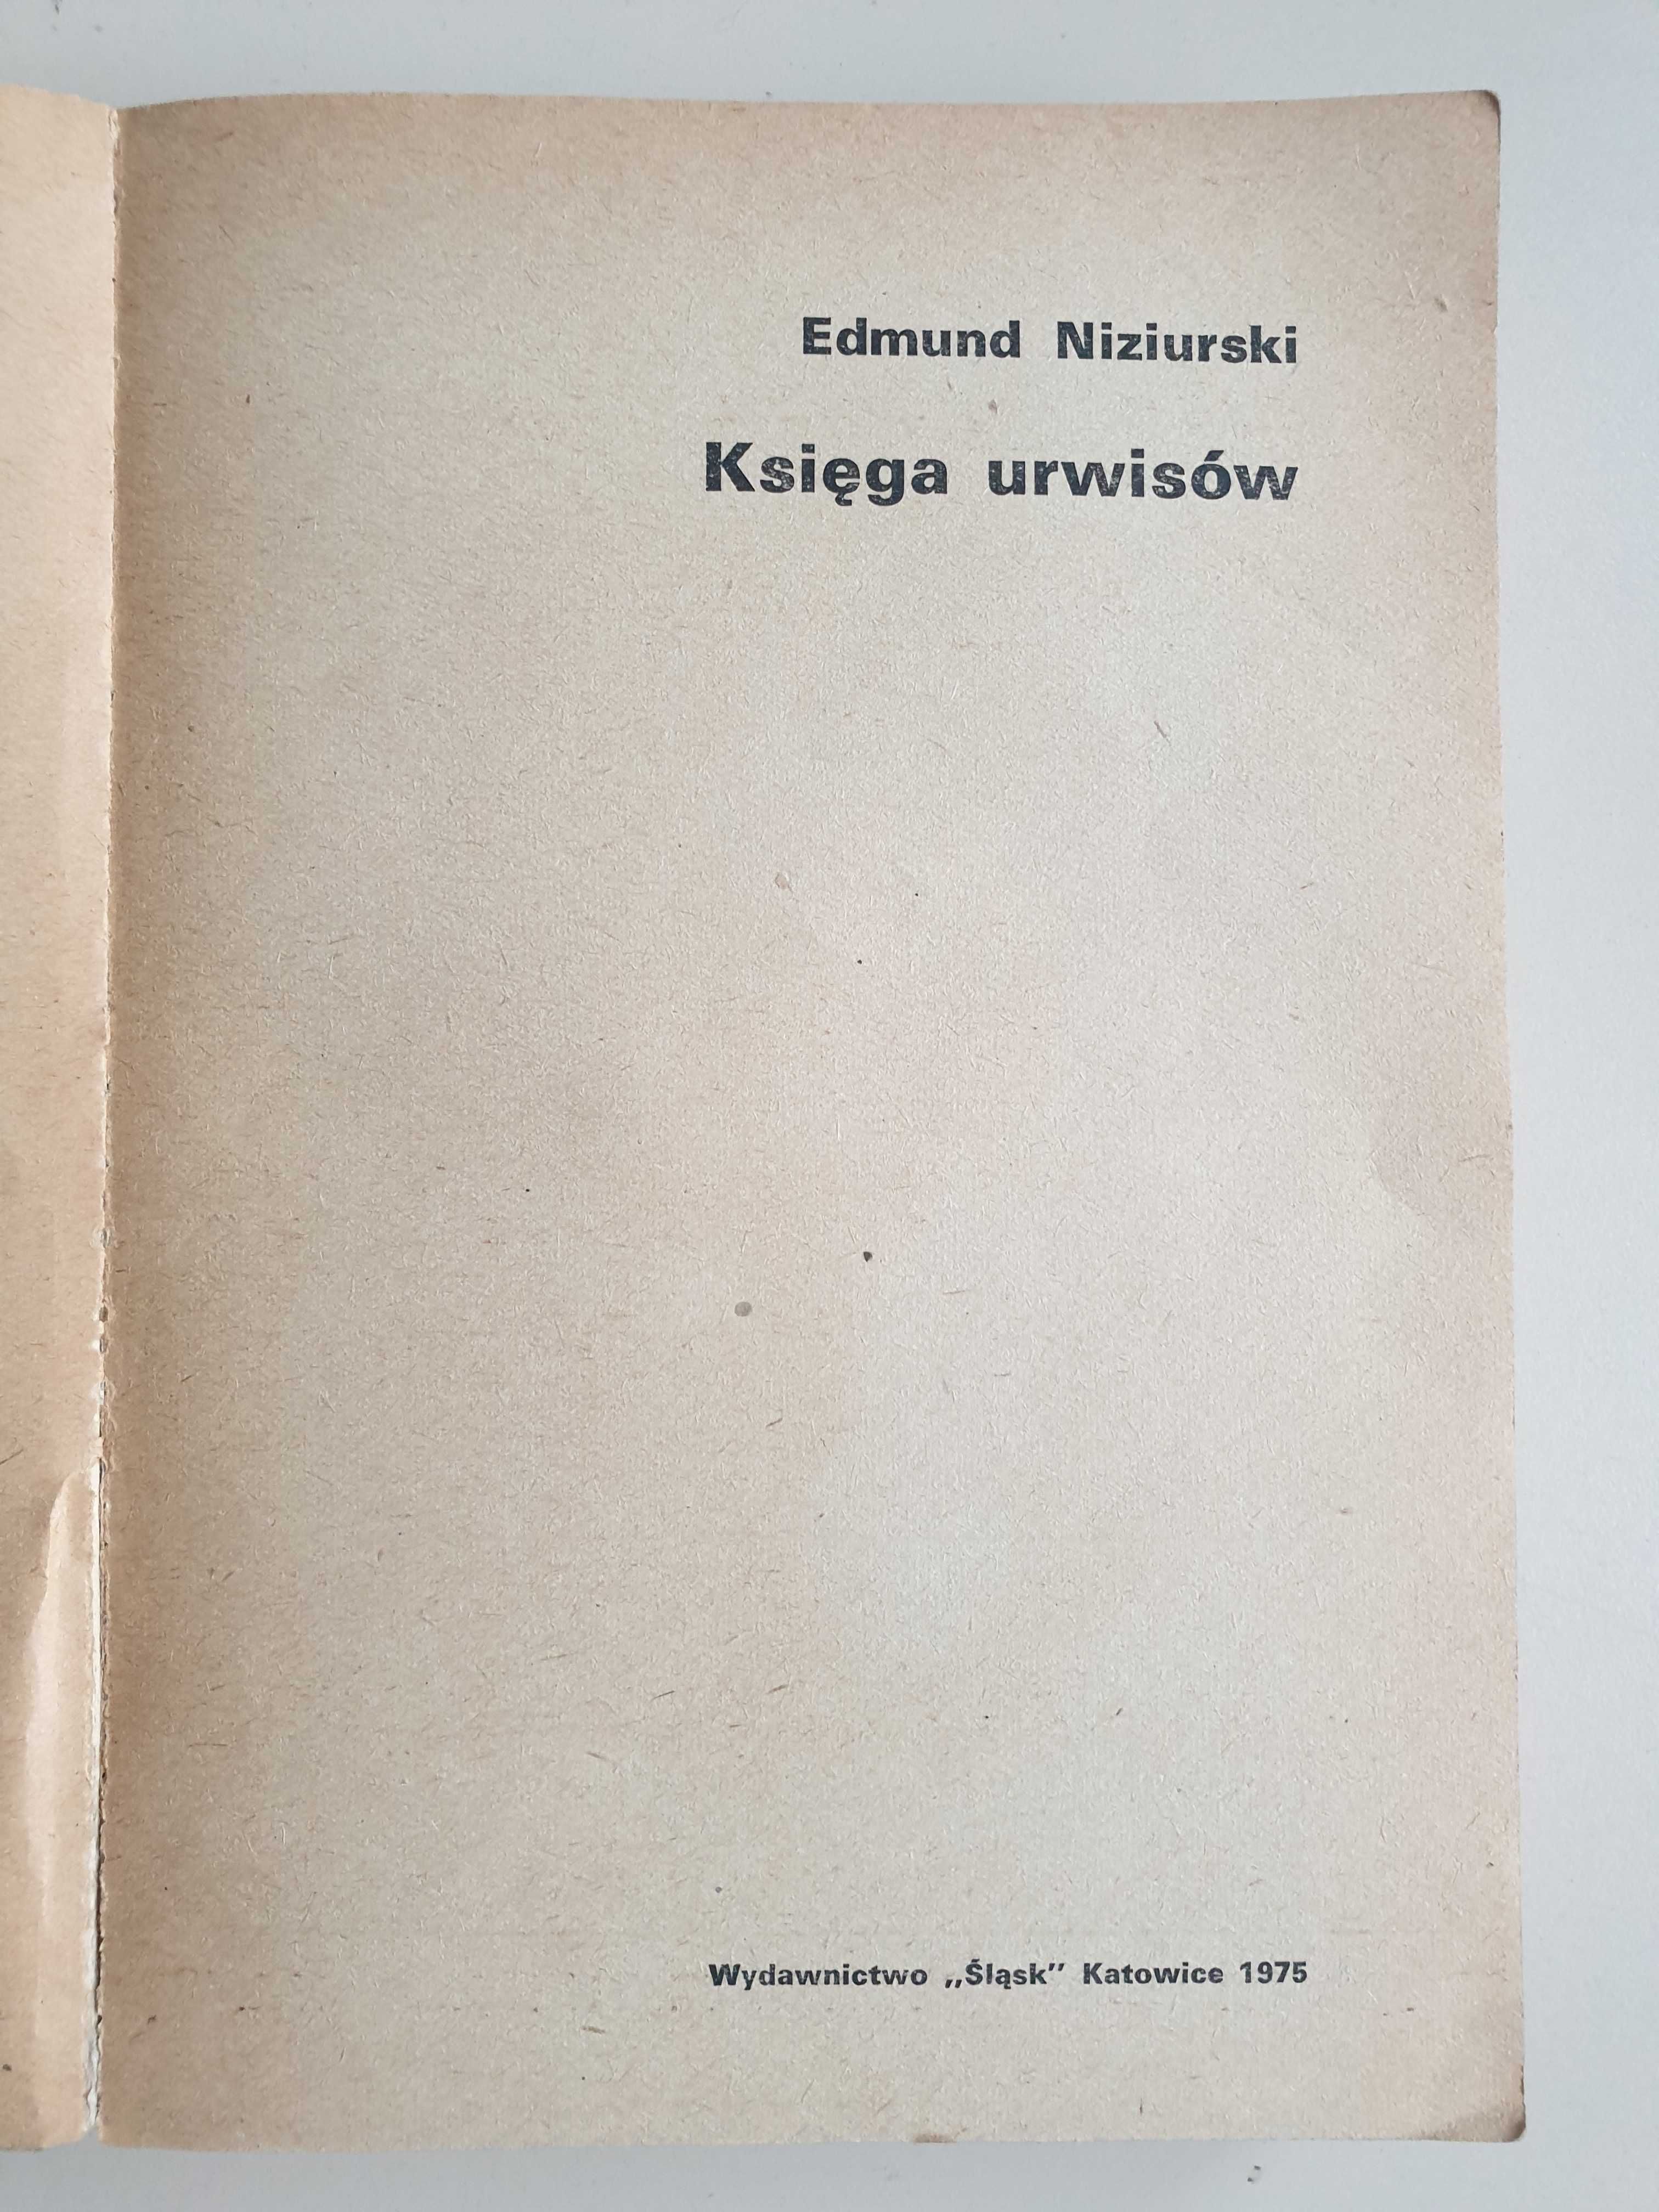 Księga uwisów - Edmund Niziurski 1975